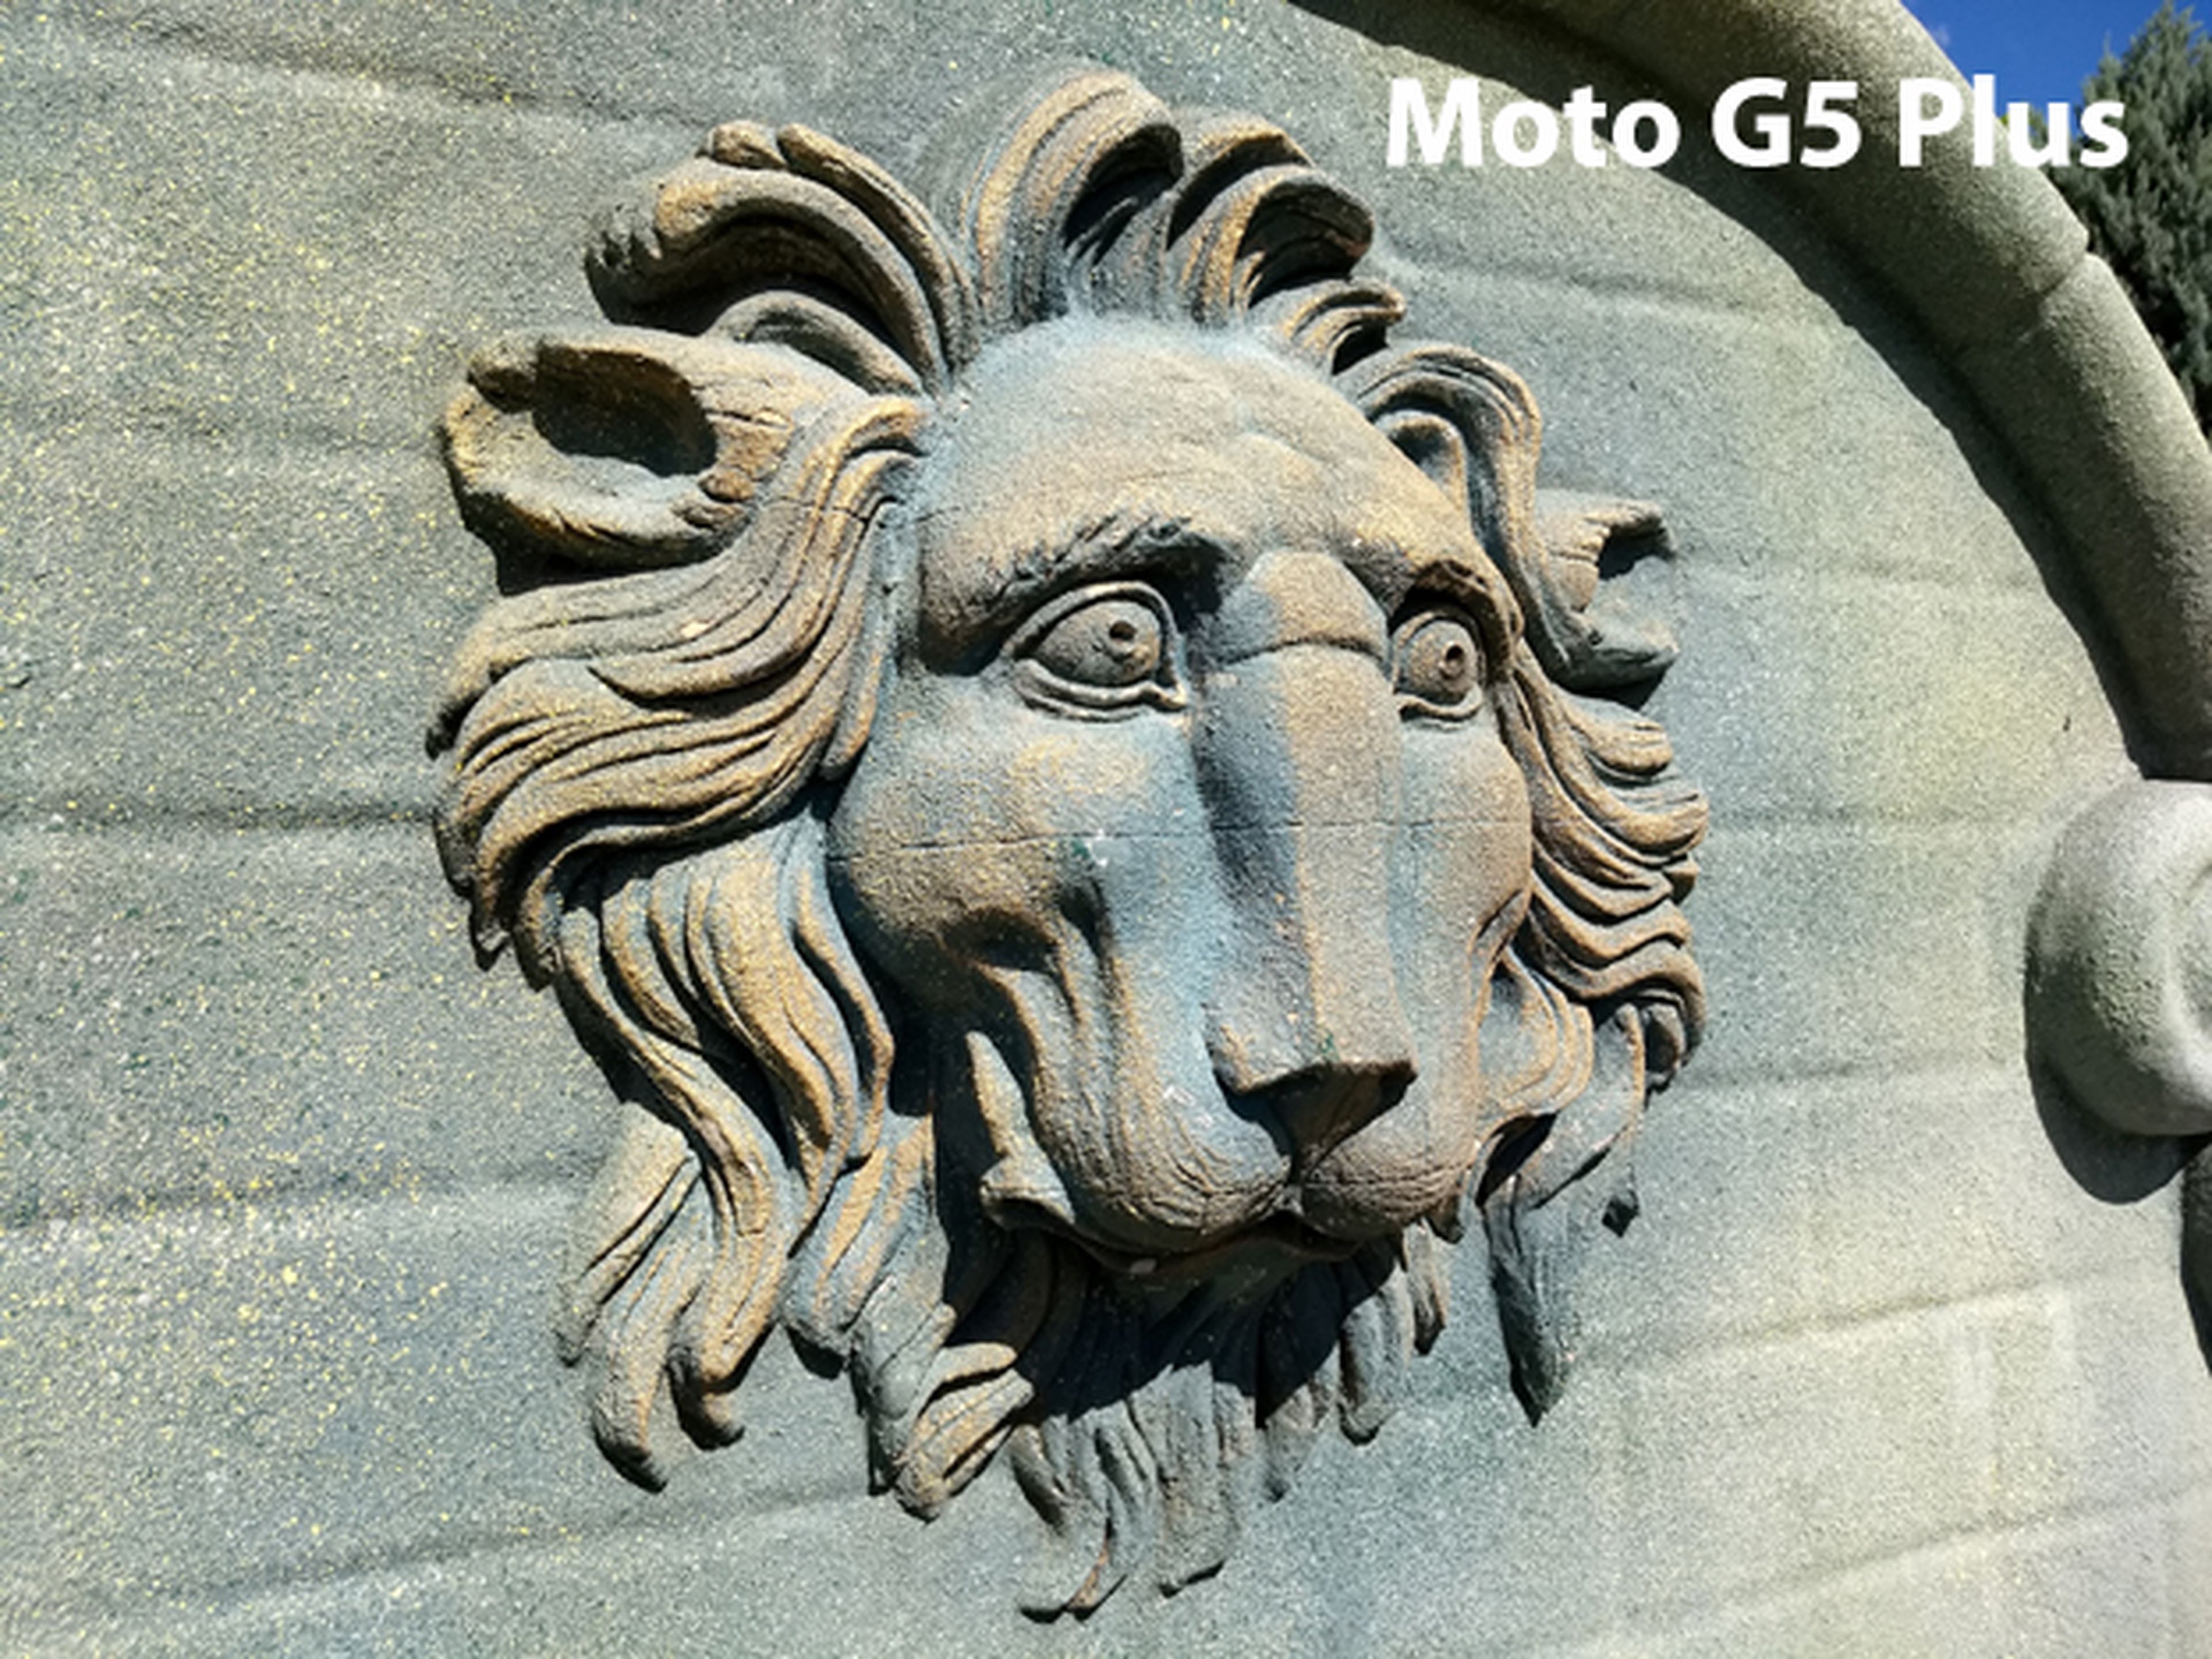 Moto G5, análisis y opinión